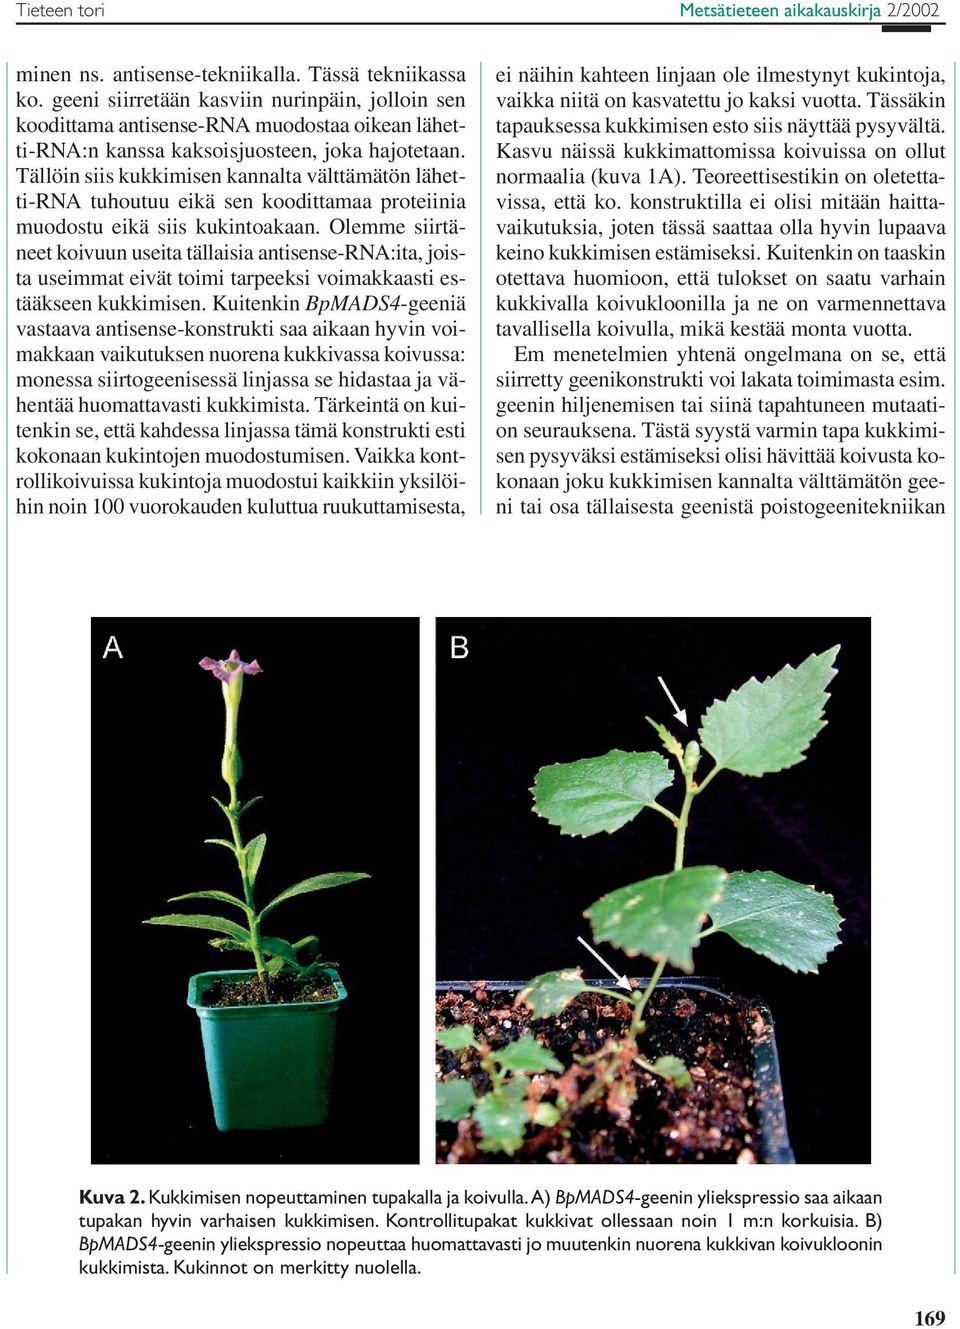 Tällöin siis kukkimisen kannalta välttämätön lähetti-rna tuhoutuu eikä sen koodittamaa proteiinia muodostu eikä siis kukintoakaan.